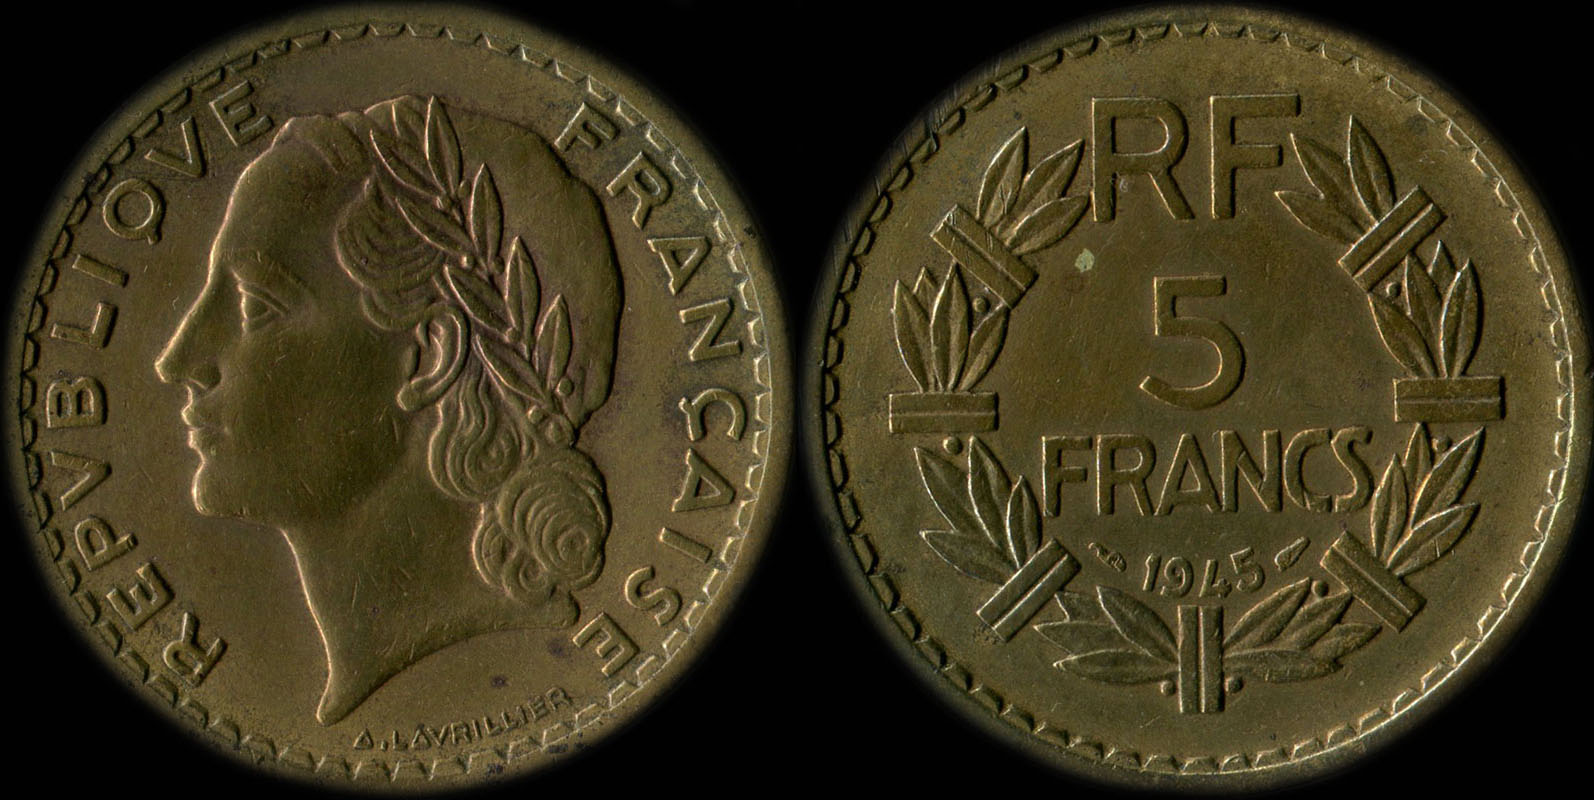 Pice de 5 francs Lavrillier 1945